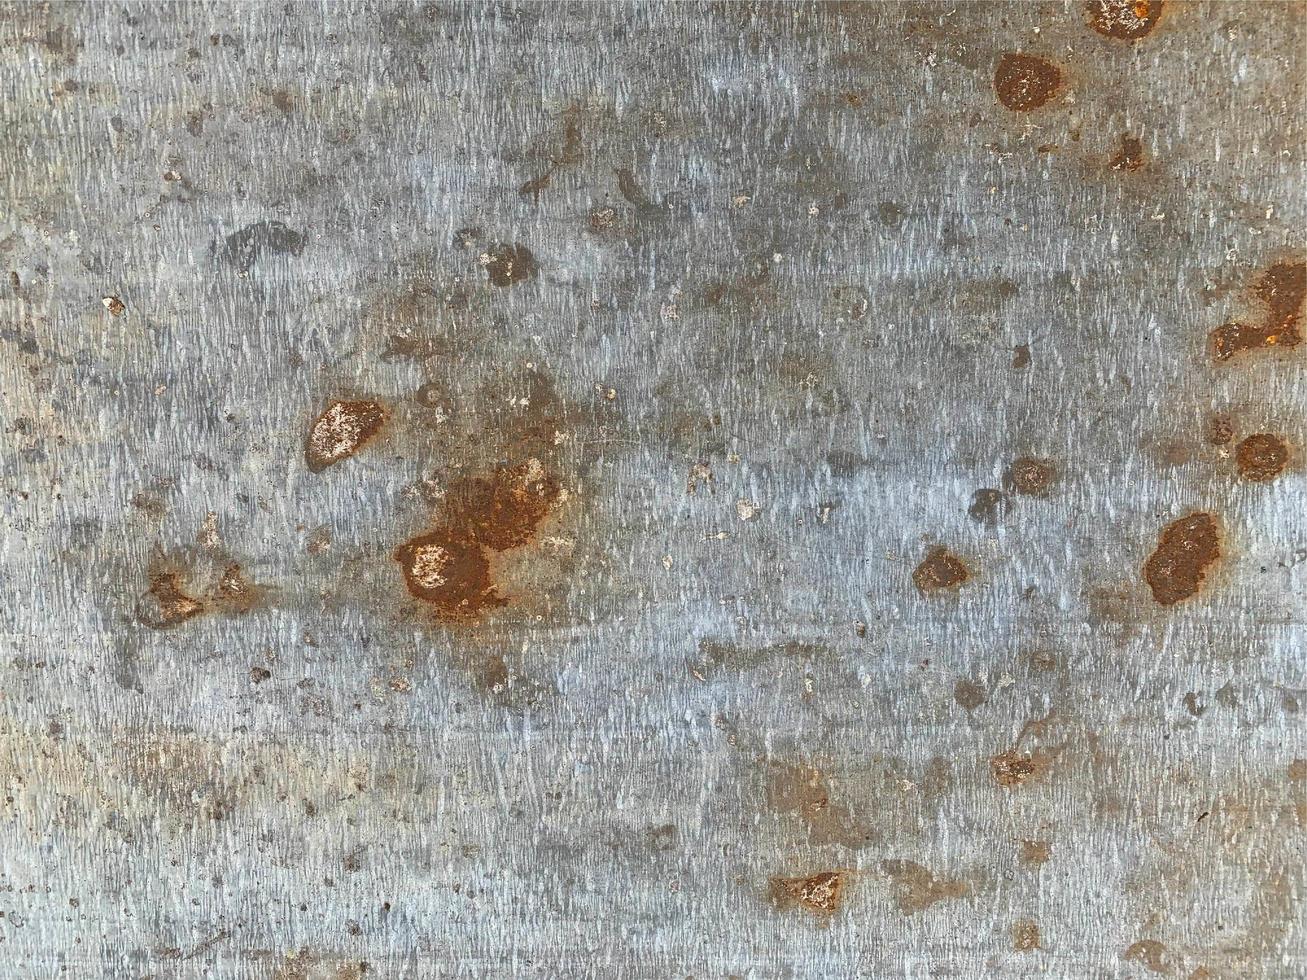 textura de superficie de metal oxidado. fondo oxidado foto